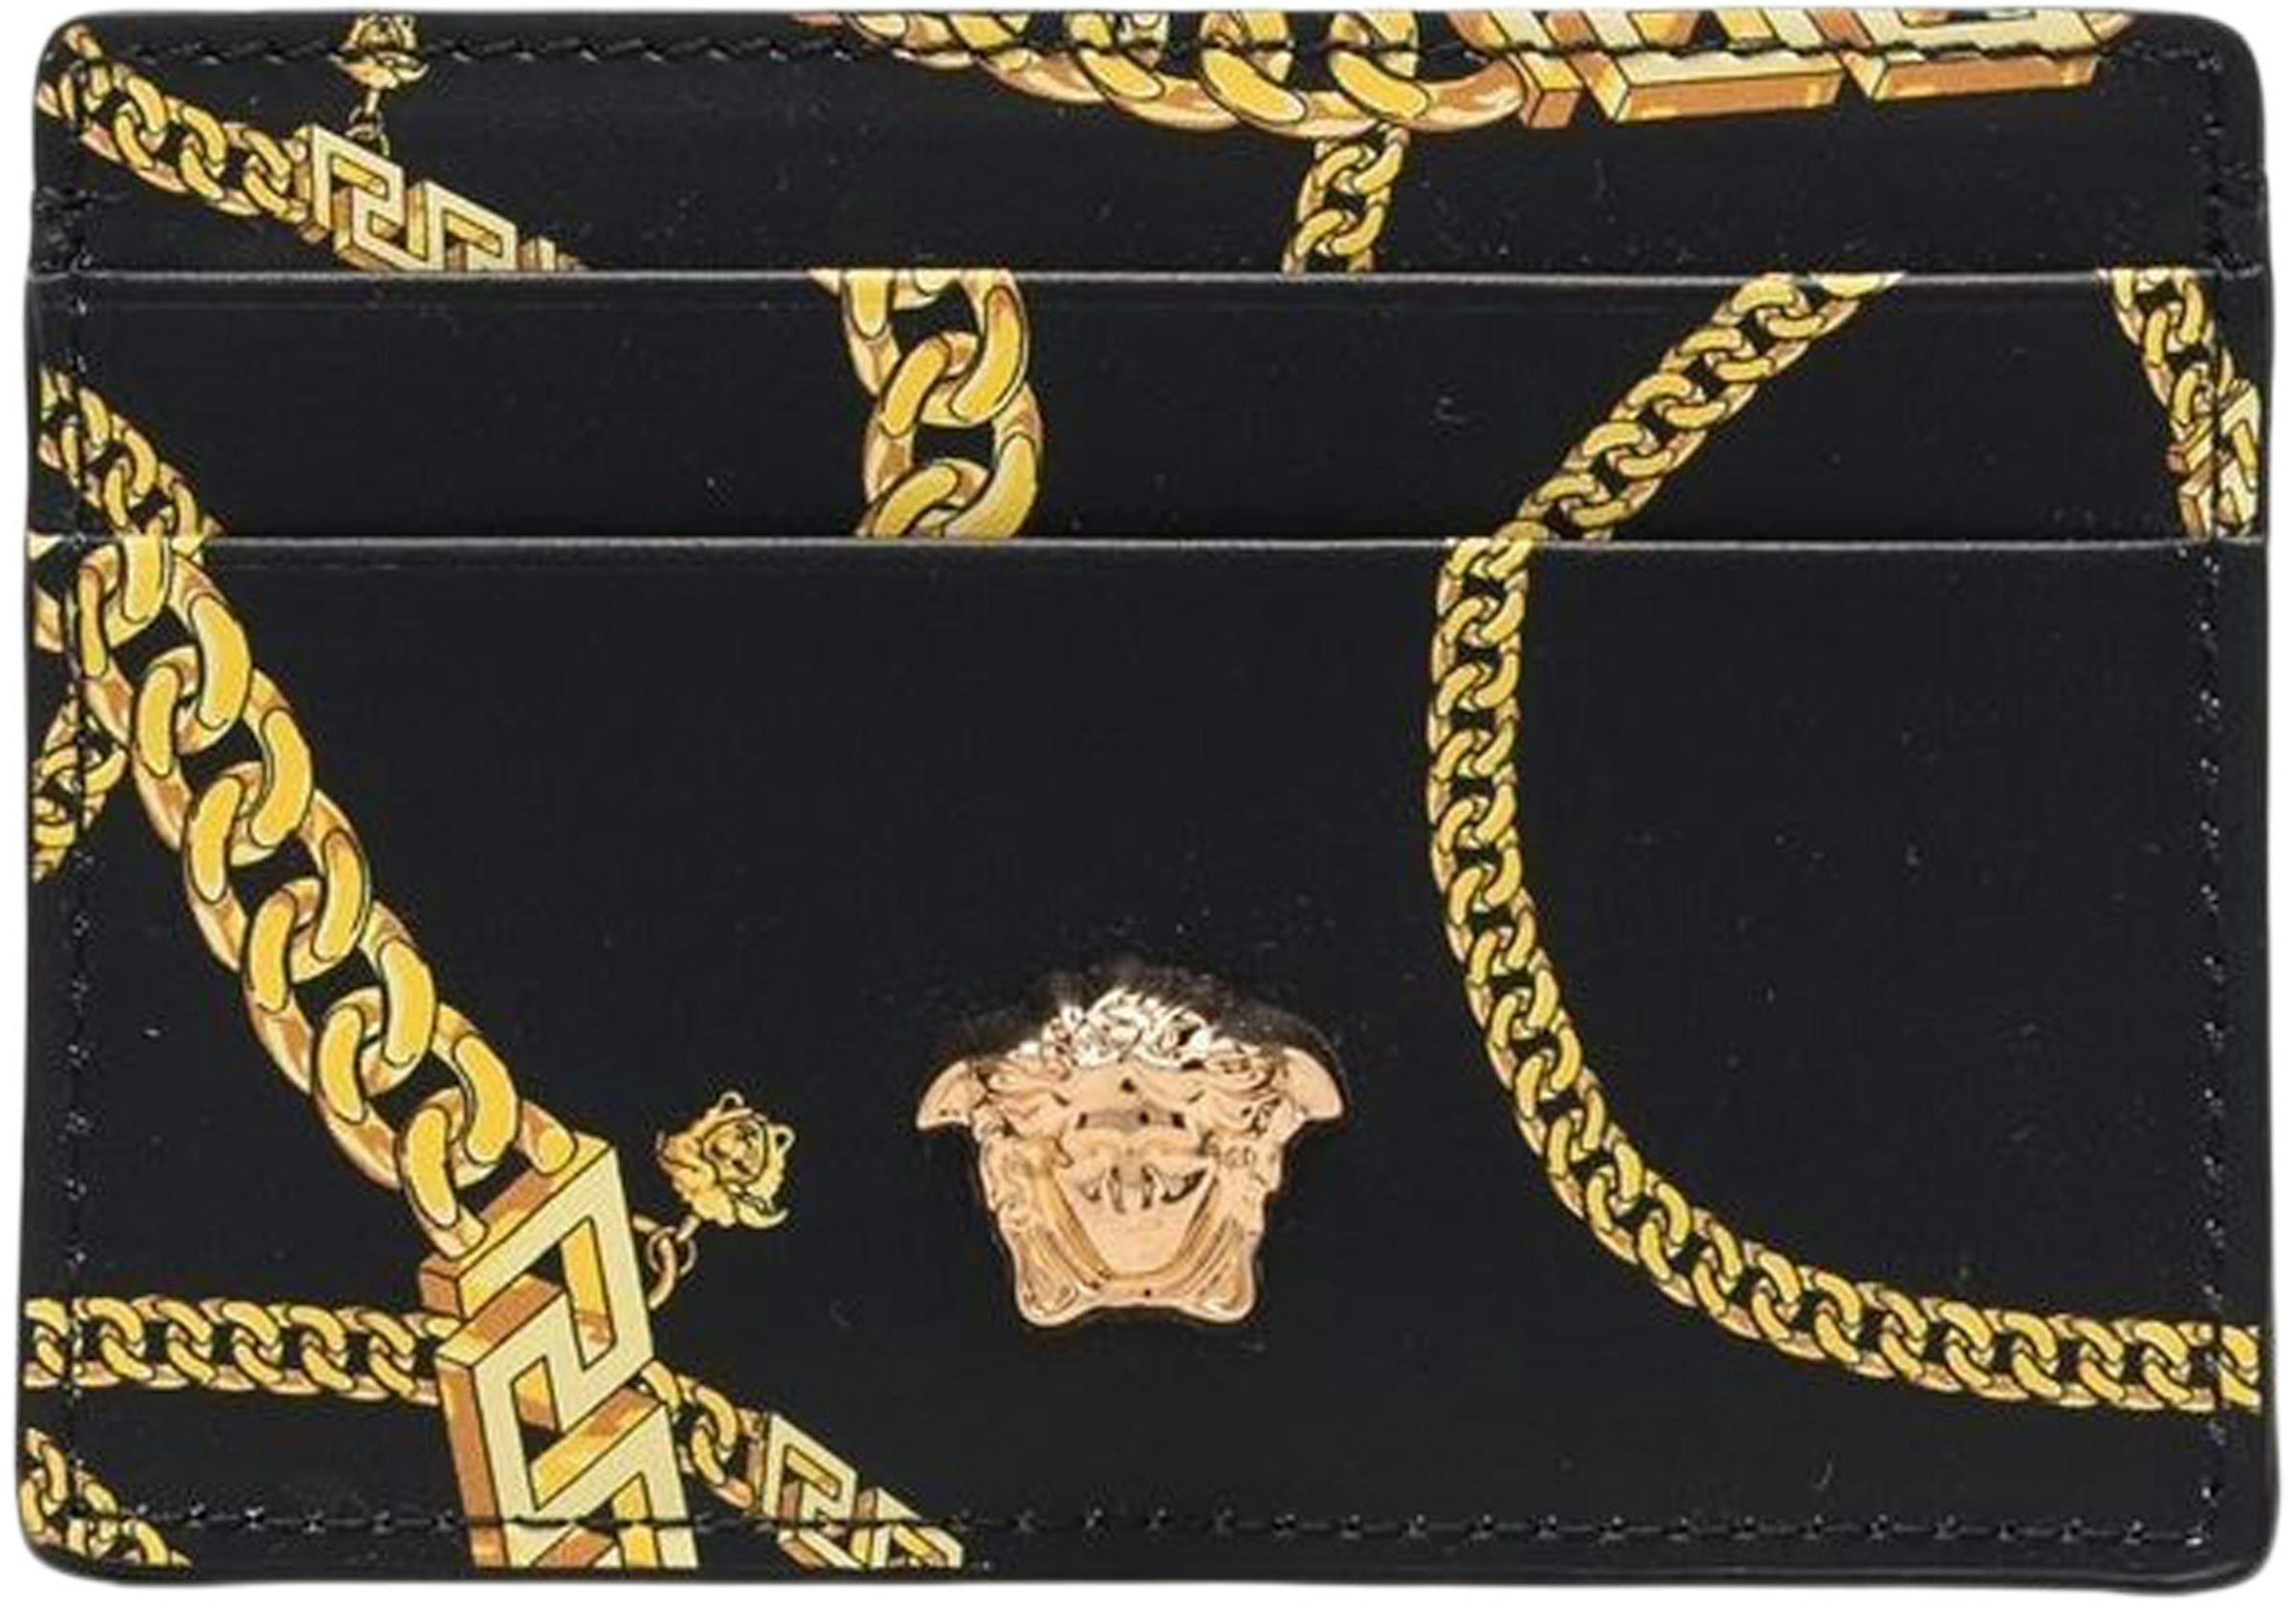 Gold 'La Medusa' Purse Chain by Versace on Sale